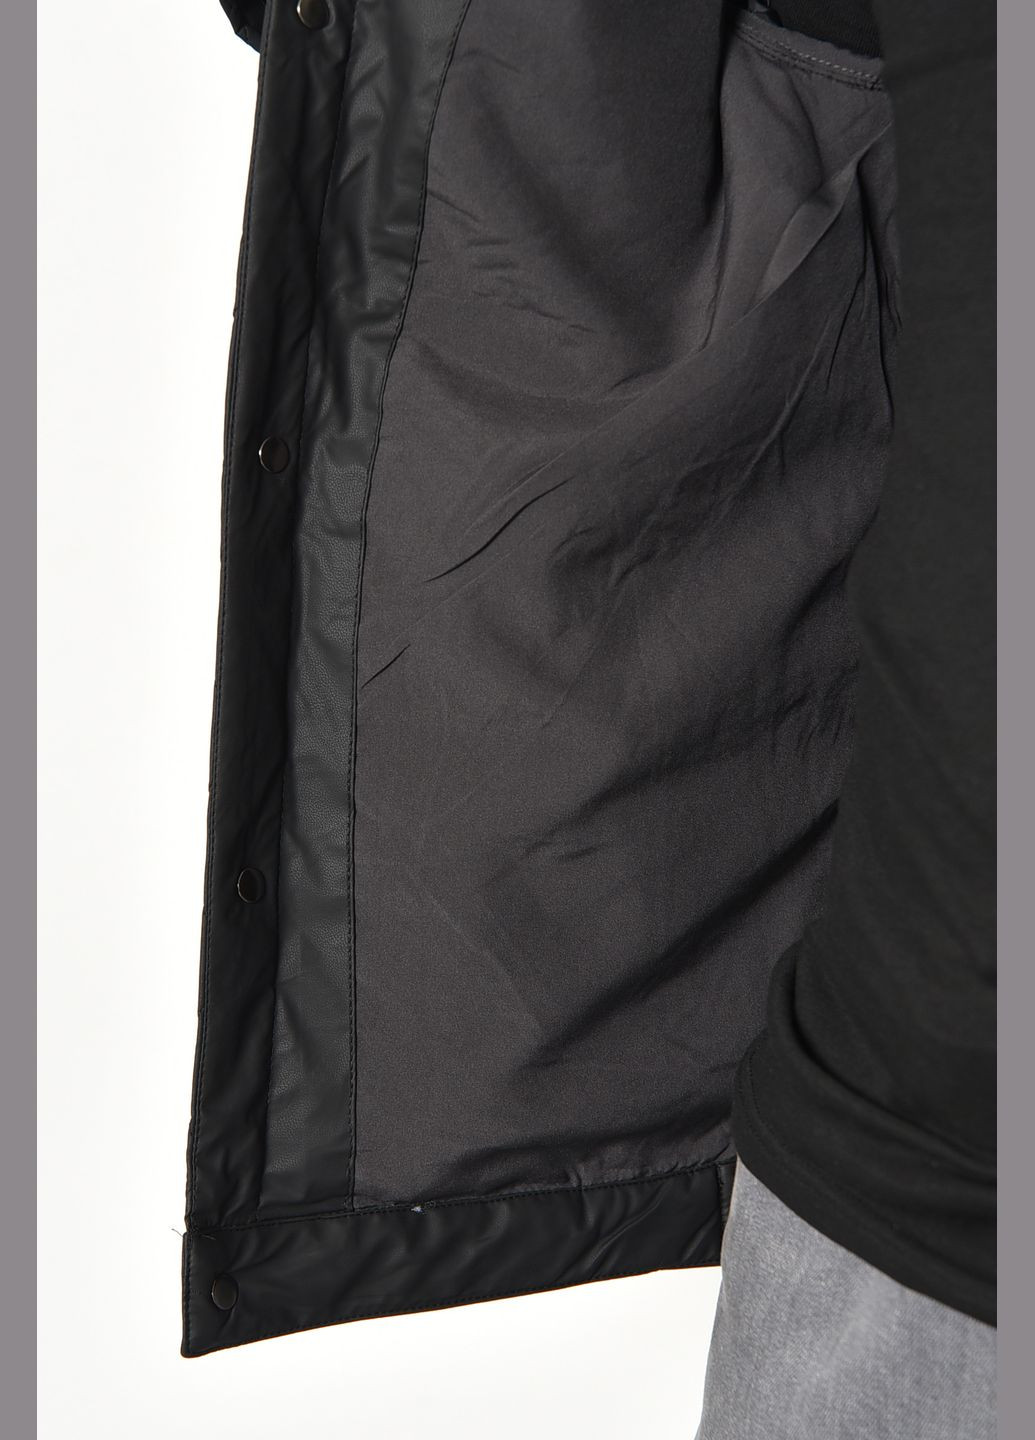 Черная демисезонная куртка мужская демисезонная черного цвета Let's Shop